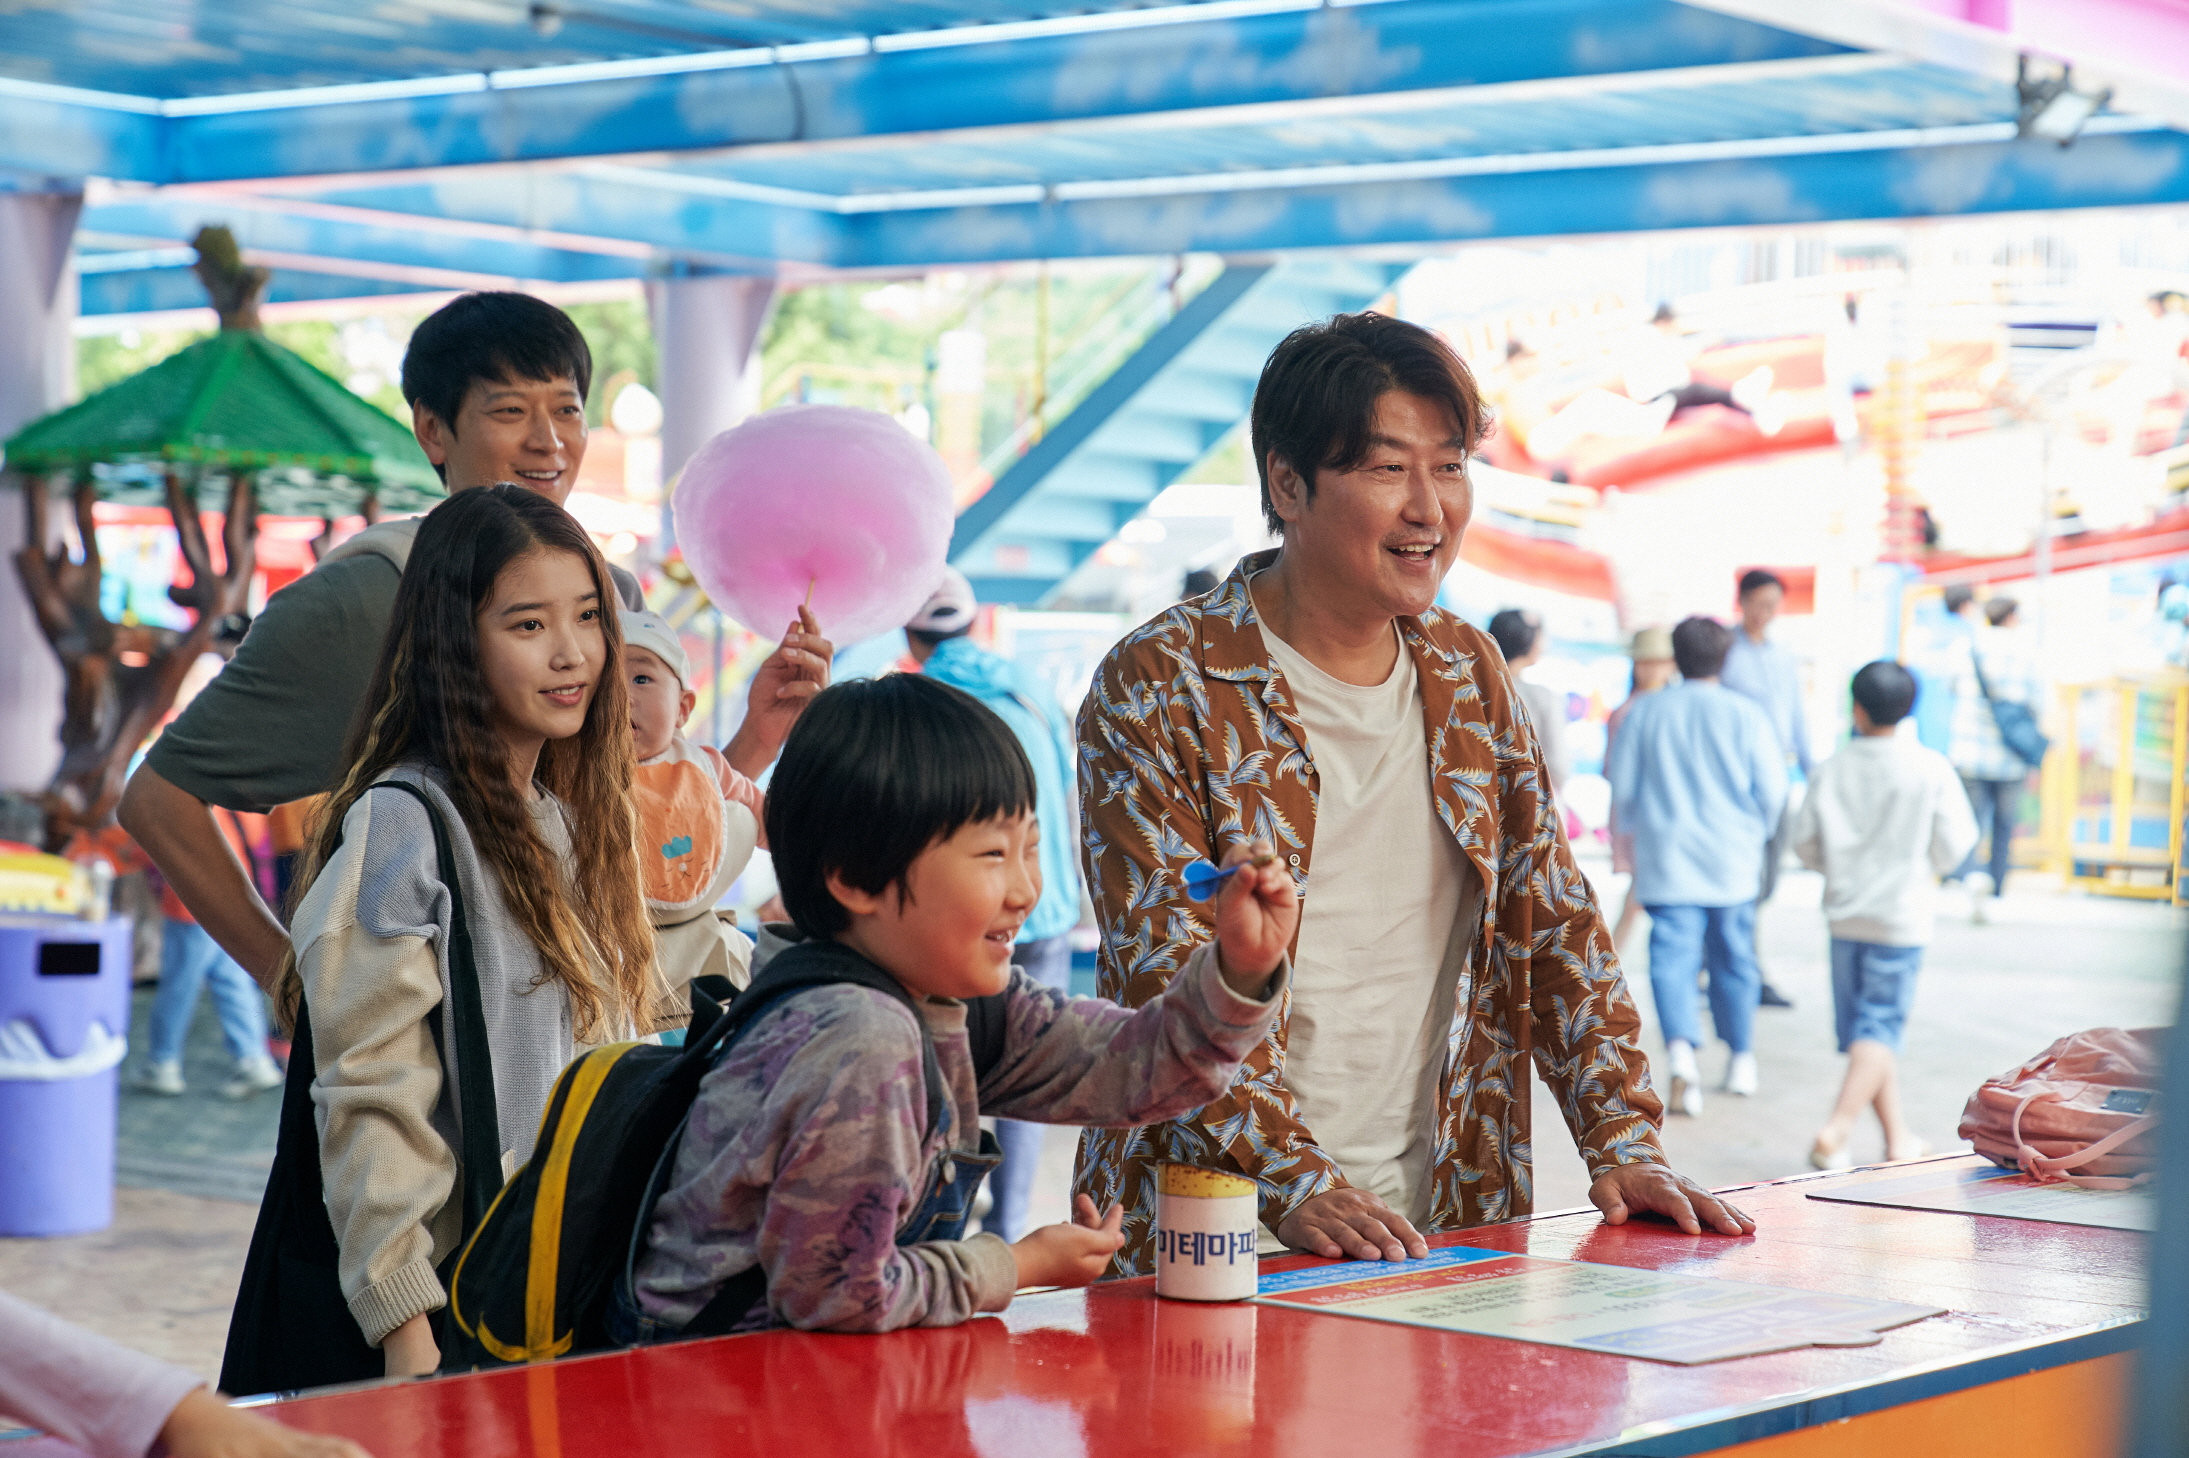 電影 影評 是枝裕和 孩子轉運站 IU 宋康昊 姜棟元 韓國電影 遊樂場 小孩